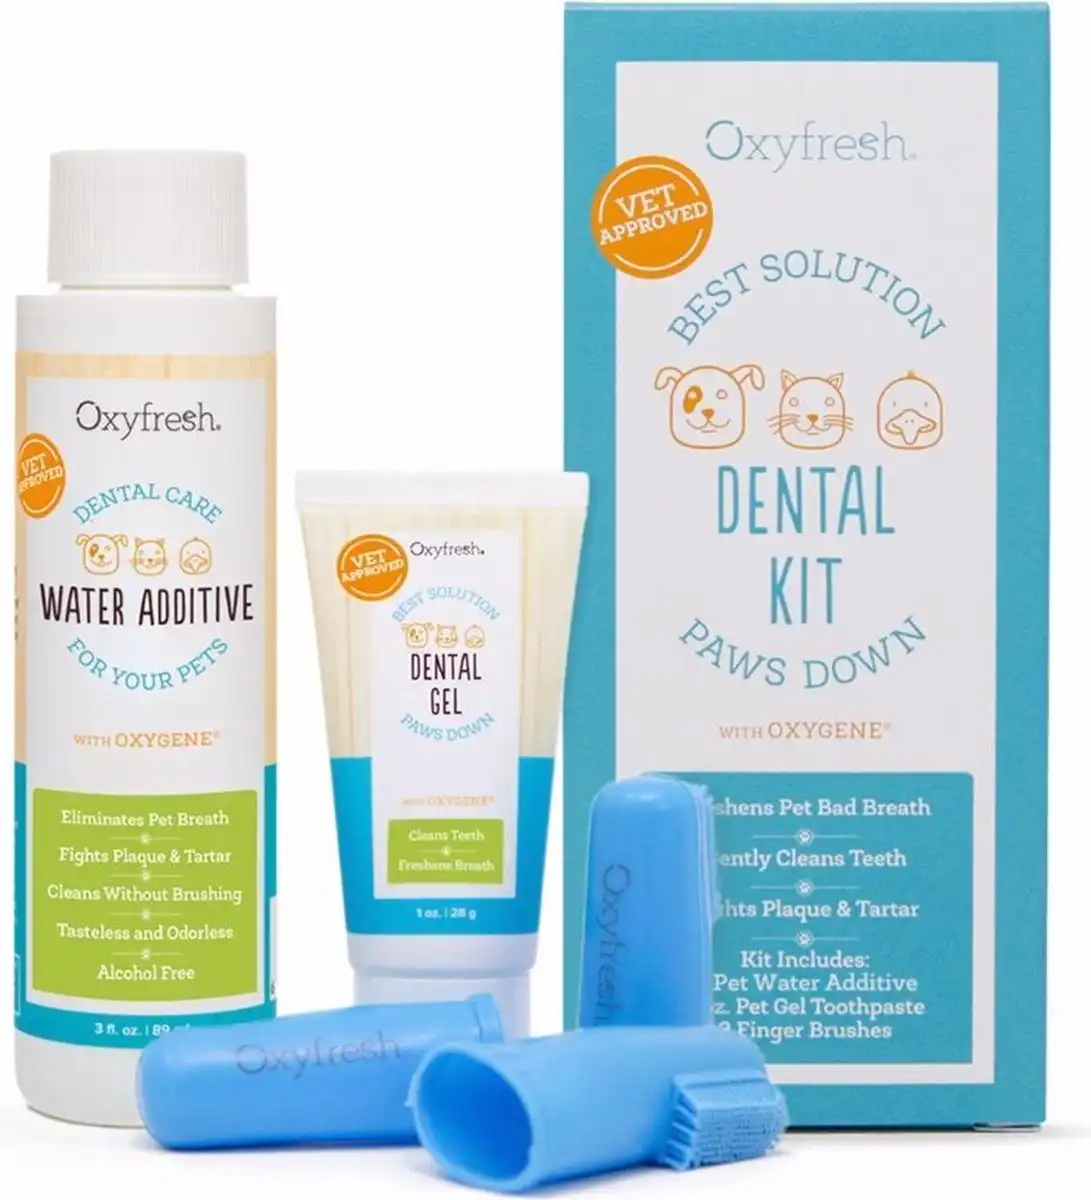 OxyFresh Pet Dental Kit